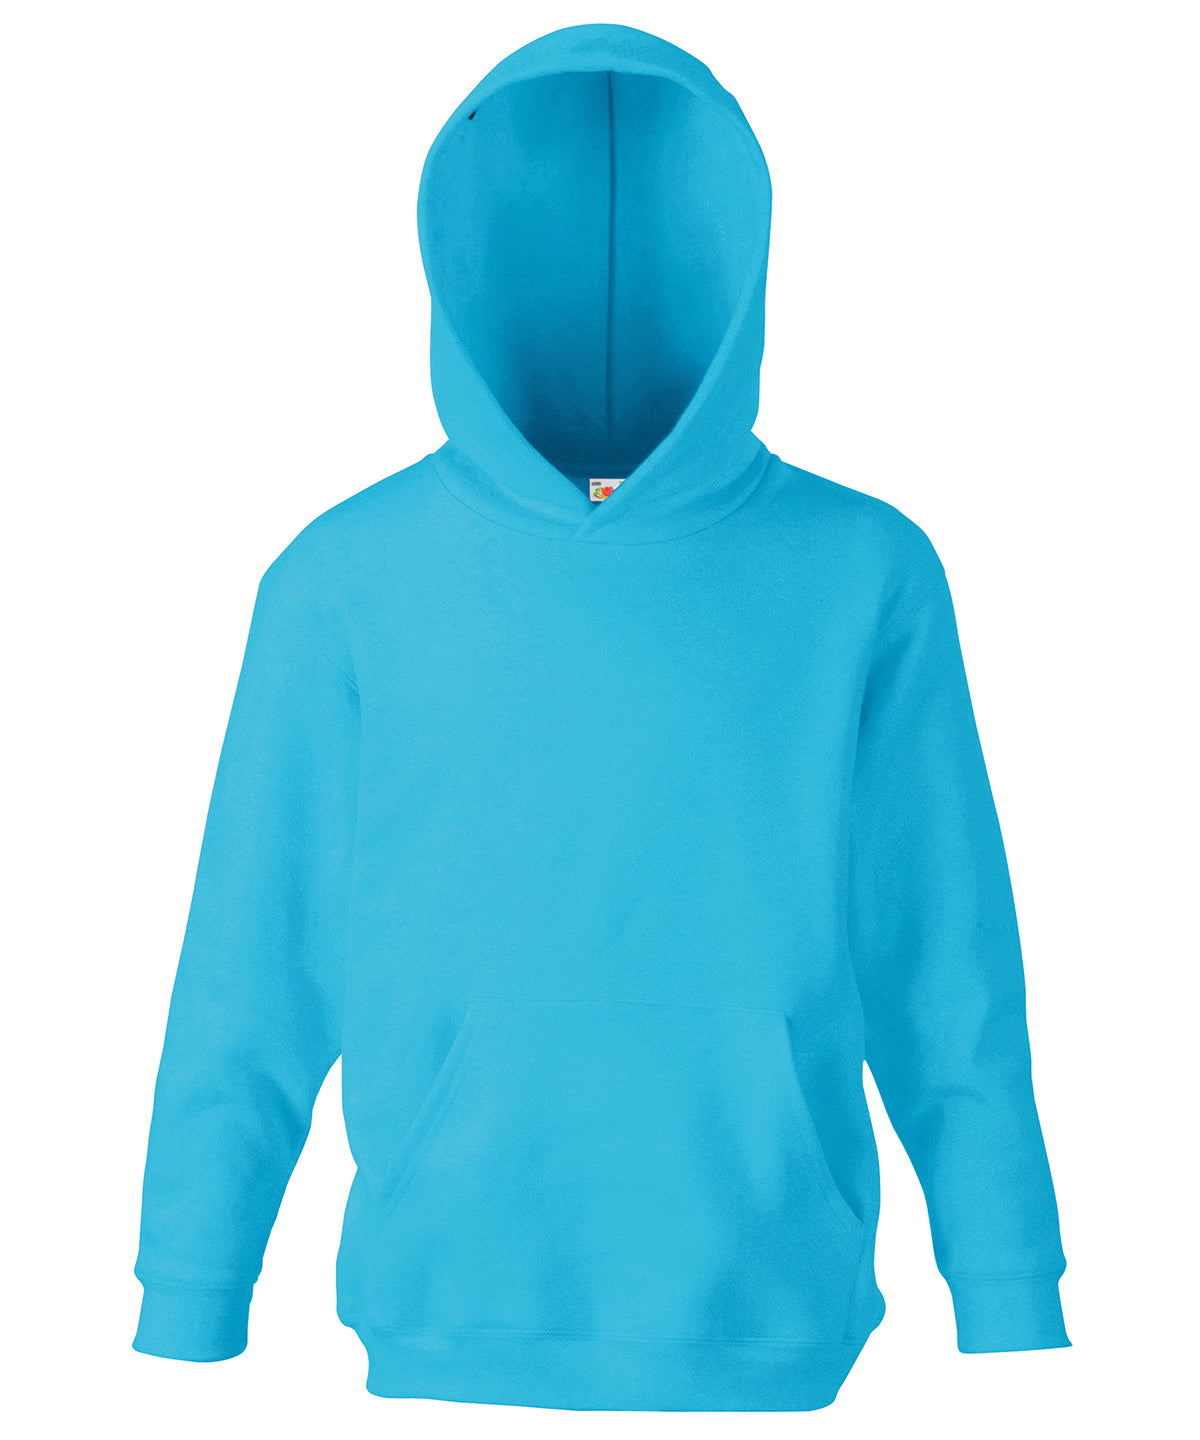 Personalised Hoodies - Mid Blue Fruit of the Loom Kids classic hooded sweatshirt